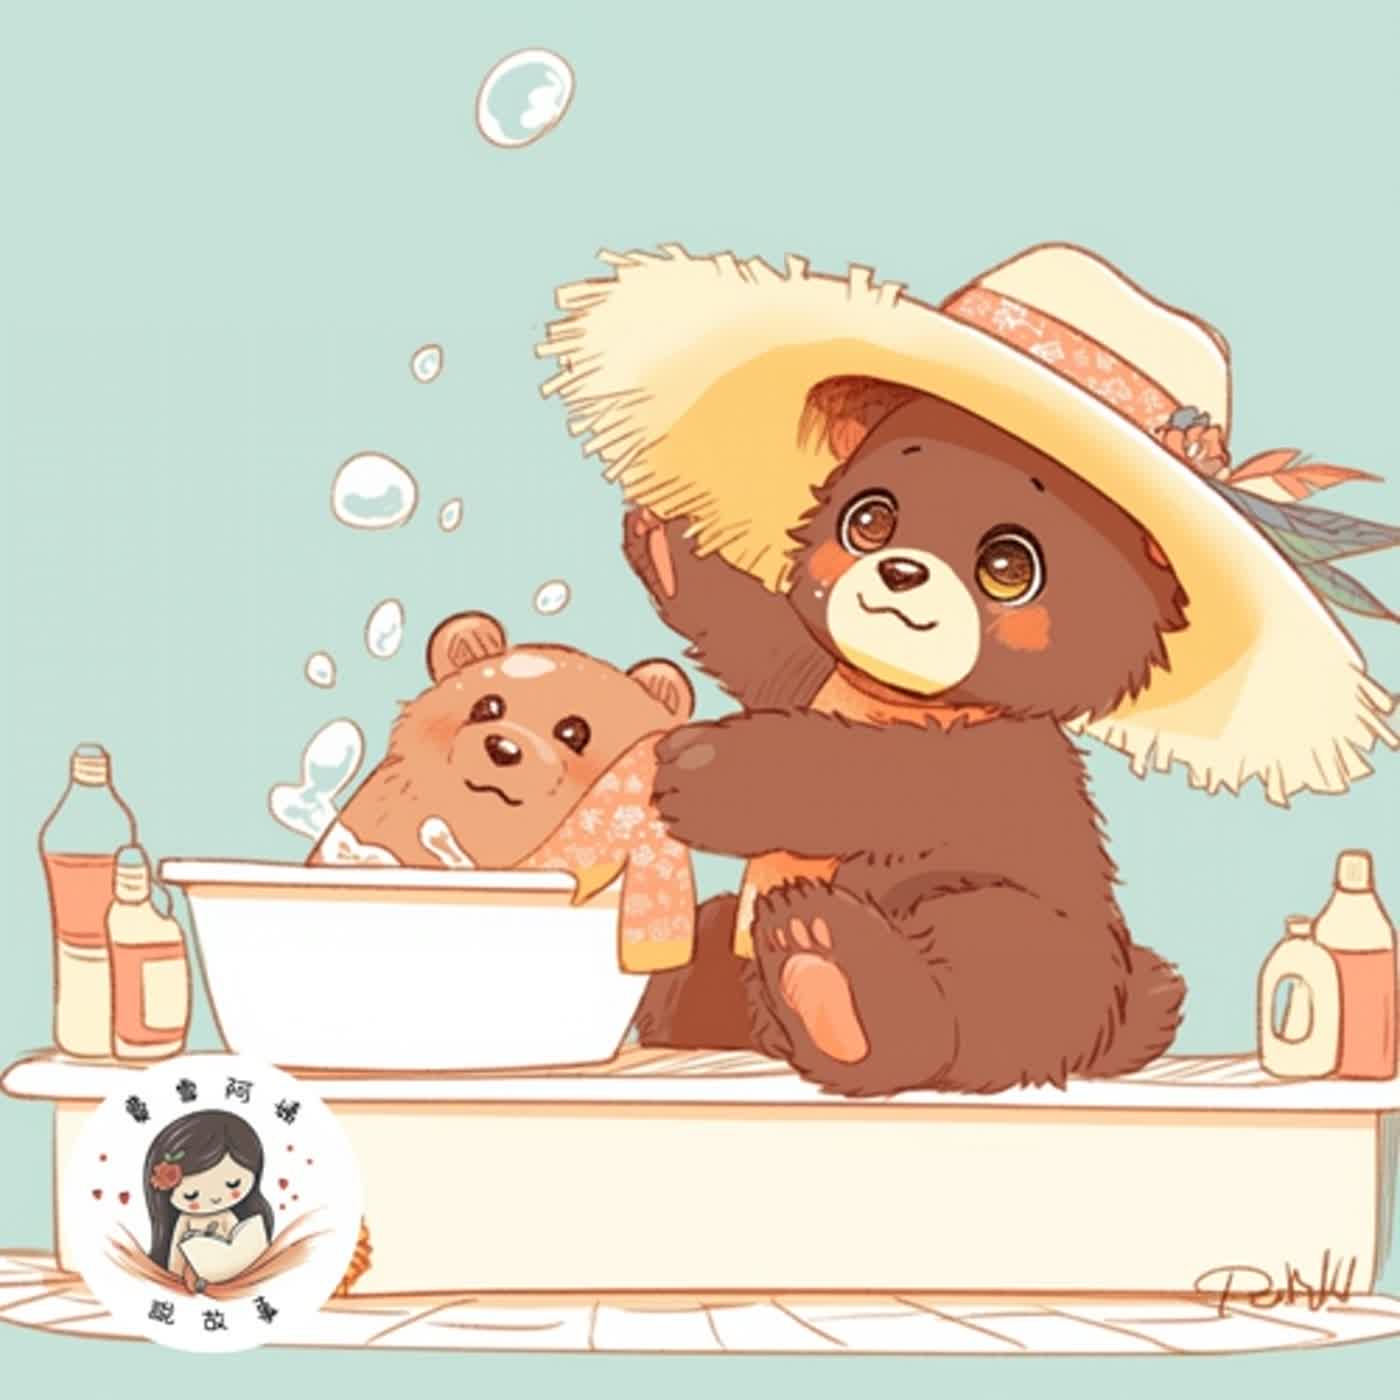 【兒童故事】EP32 睡前故事《熊熊媽媽洗個不停》想幫助媽媽的心意